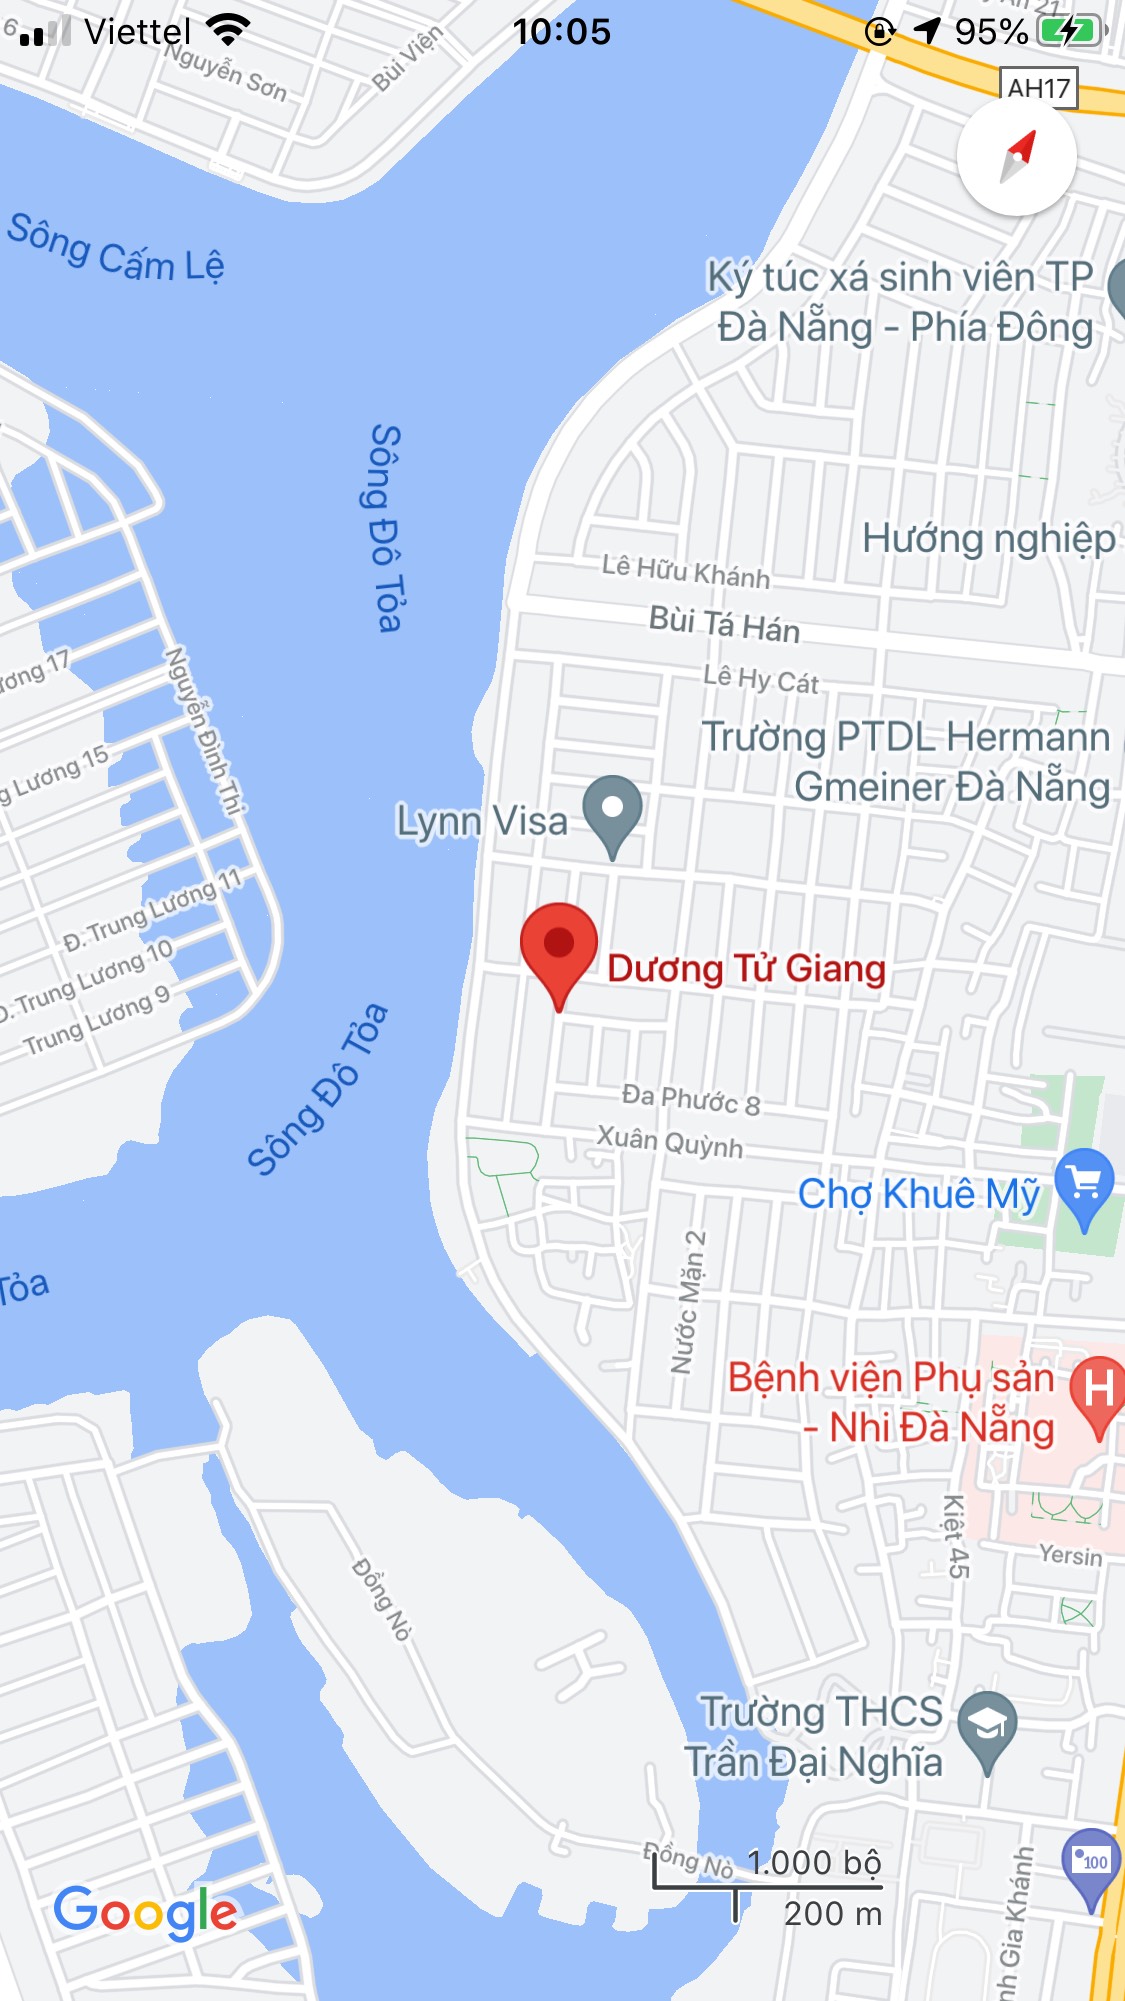 Bán nhà mặt tiền đường Dương Tử Giang, Quận Ngũ Hành Sơn, DT: 90 m2. Giá: 6,5 tỷ